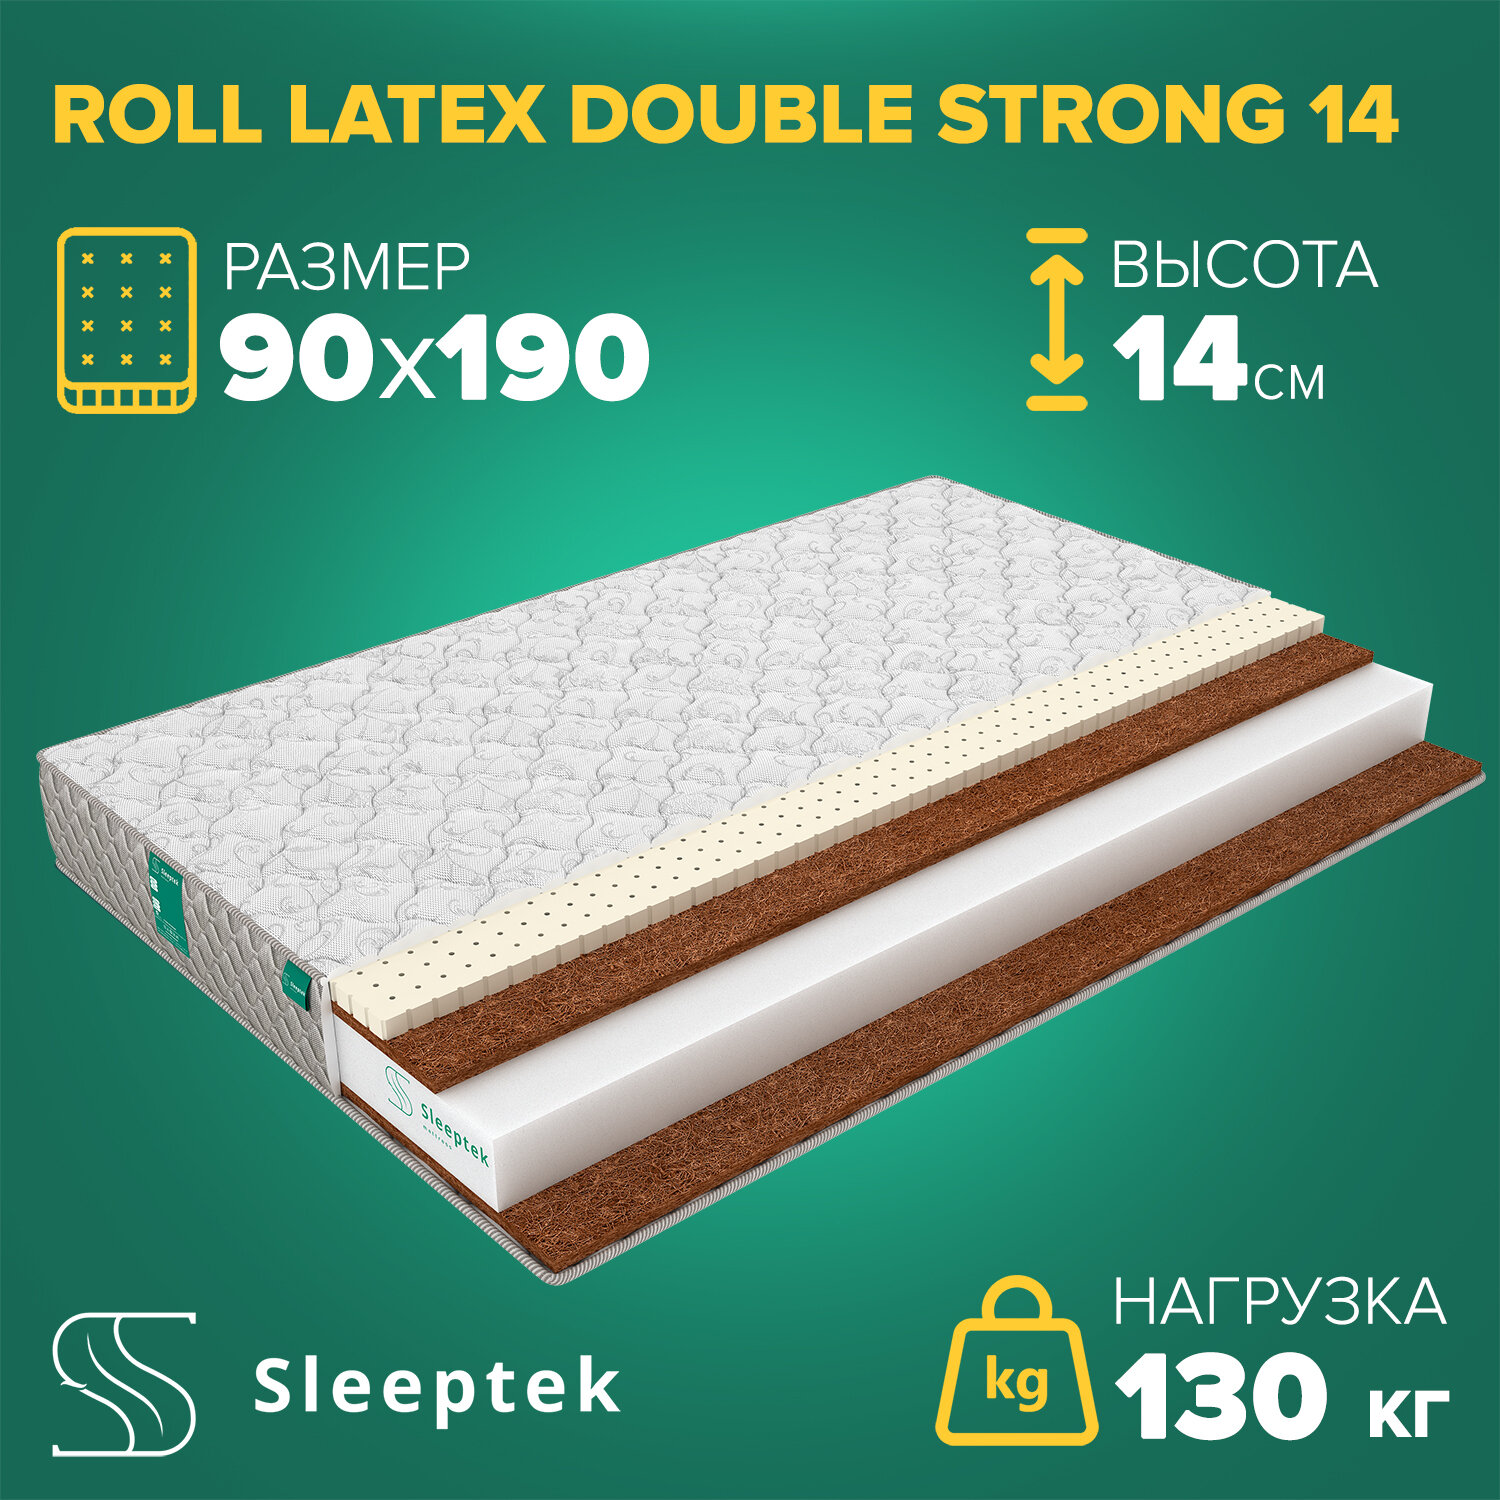 Матрас Sleeptek Roll Latex DoubleStrong 14 90х190